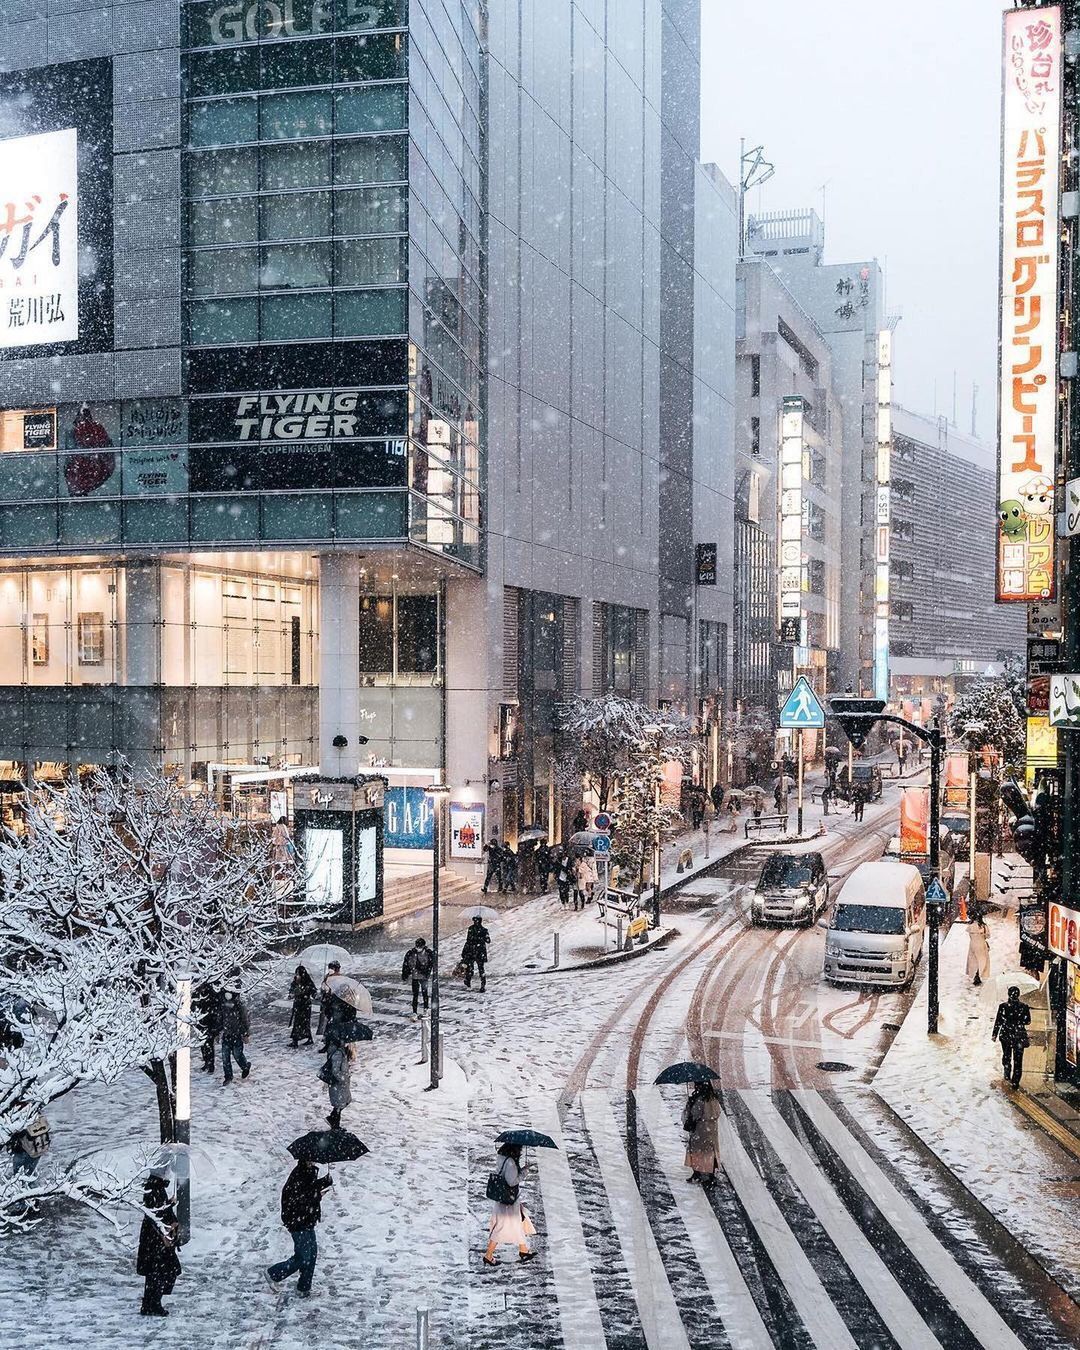 Khung cảnh đẹp Tokyo tuyết trắng sẽ khiến cho bất kỳ ai nhìn thấy đều phải trầm trồ. Thành phố an ninh, có những siêu thị, quán ăn và tiện nghi phục vụ chu đáo. Hãy tới và thưởng thức không khí đẹp tuyệt vời này.